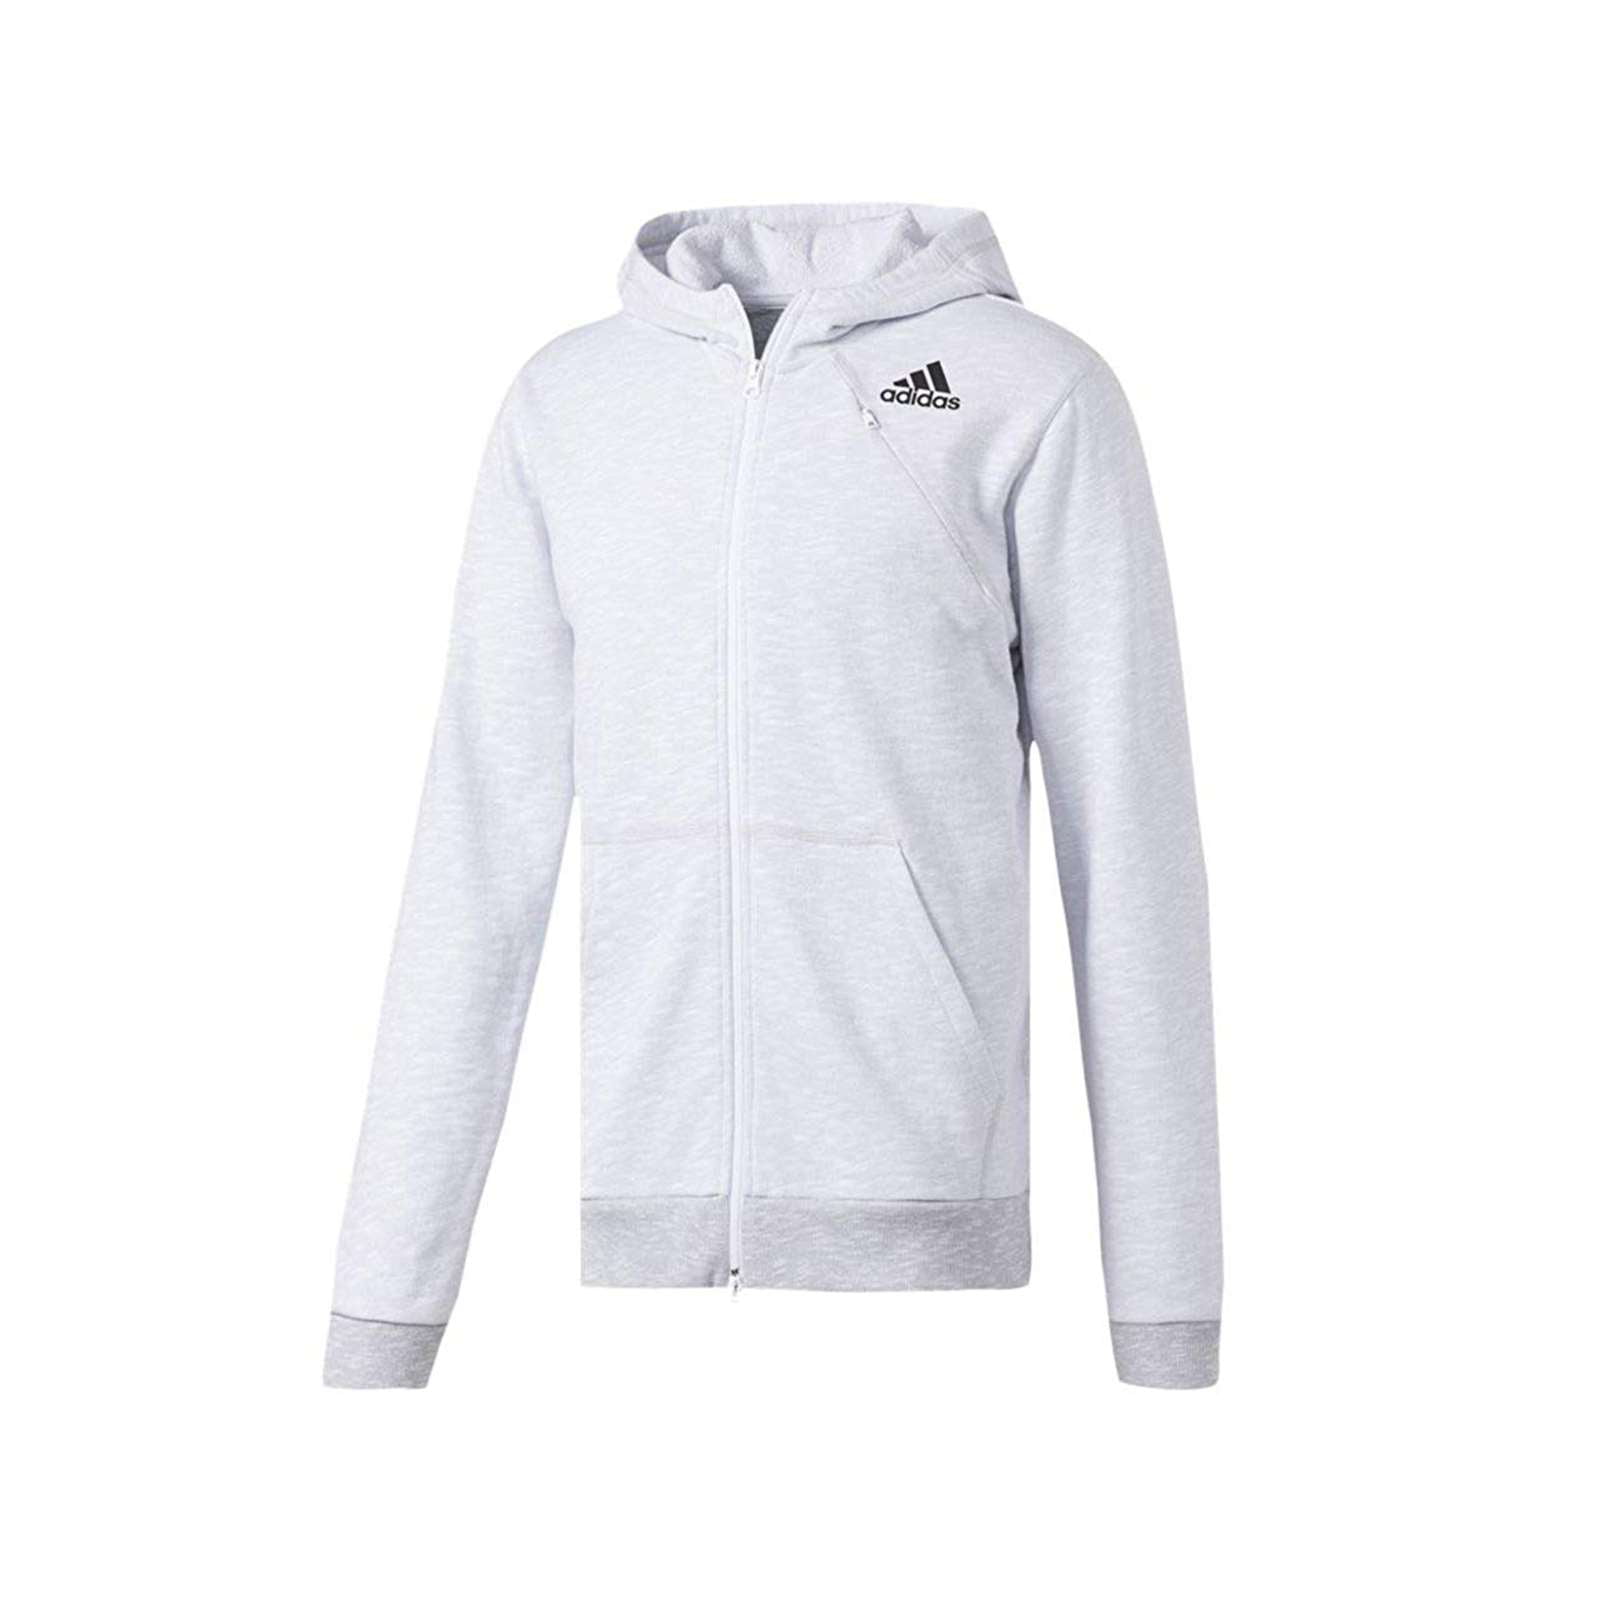 Adidas - adidas cross-up full zip hoodie - men's - Walmart.com